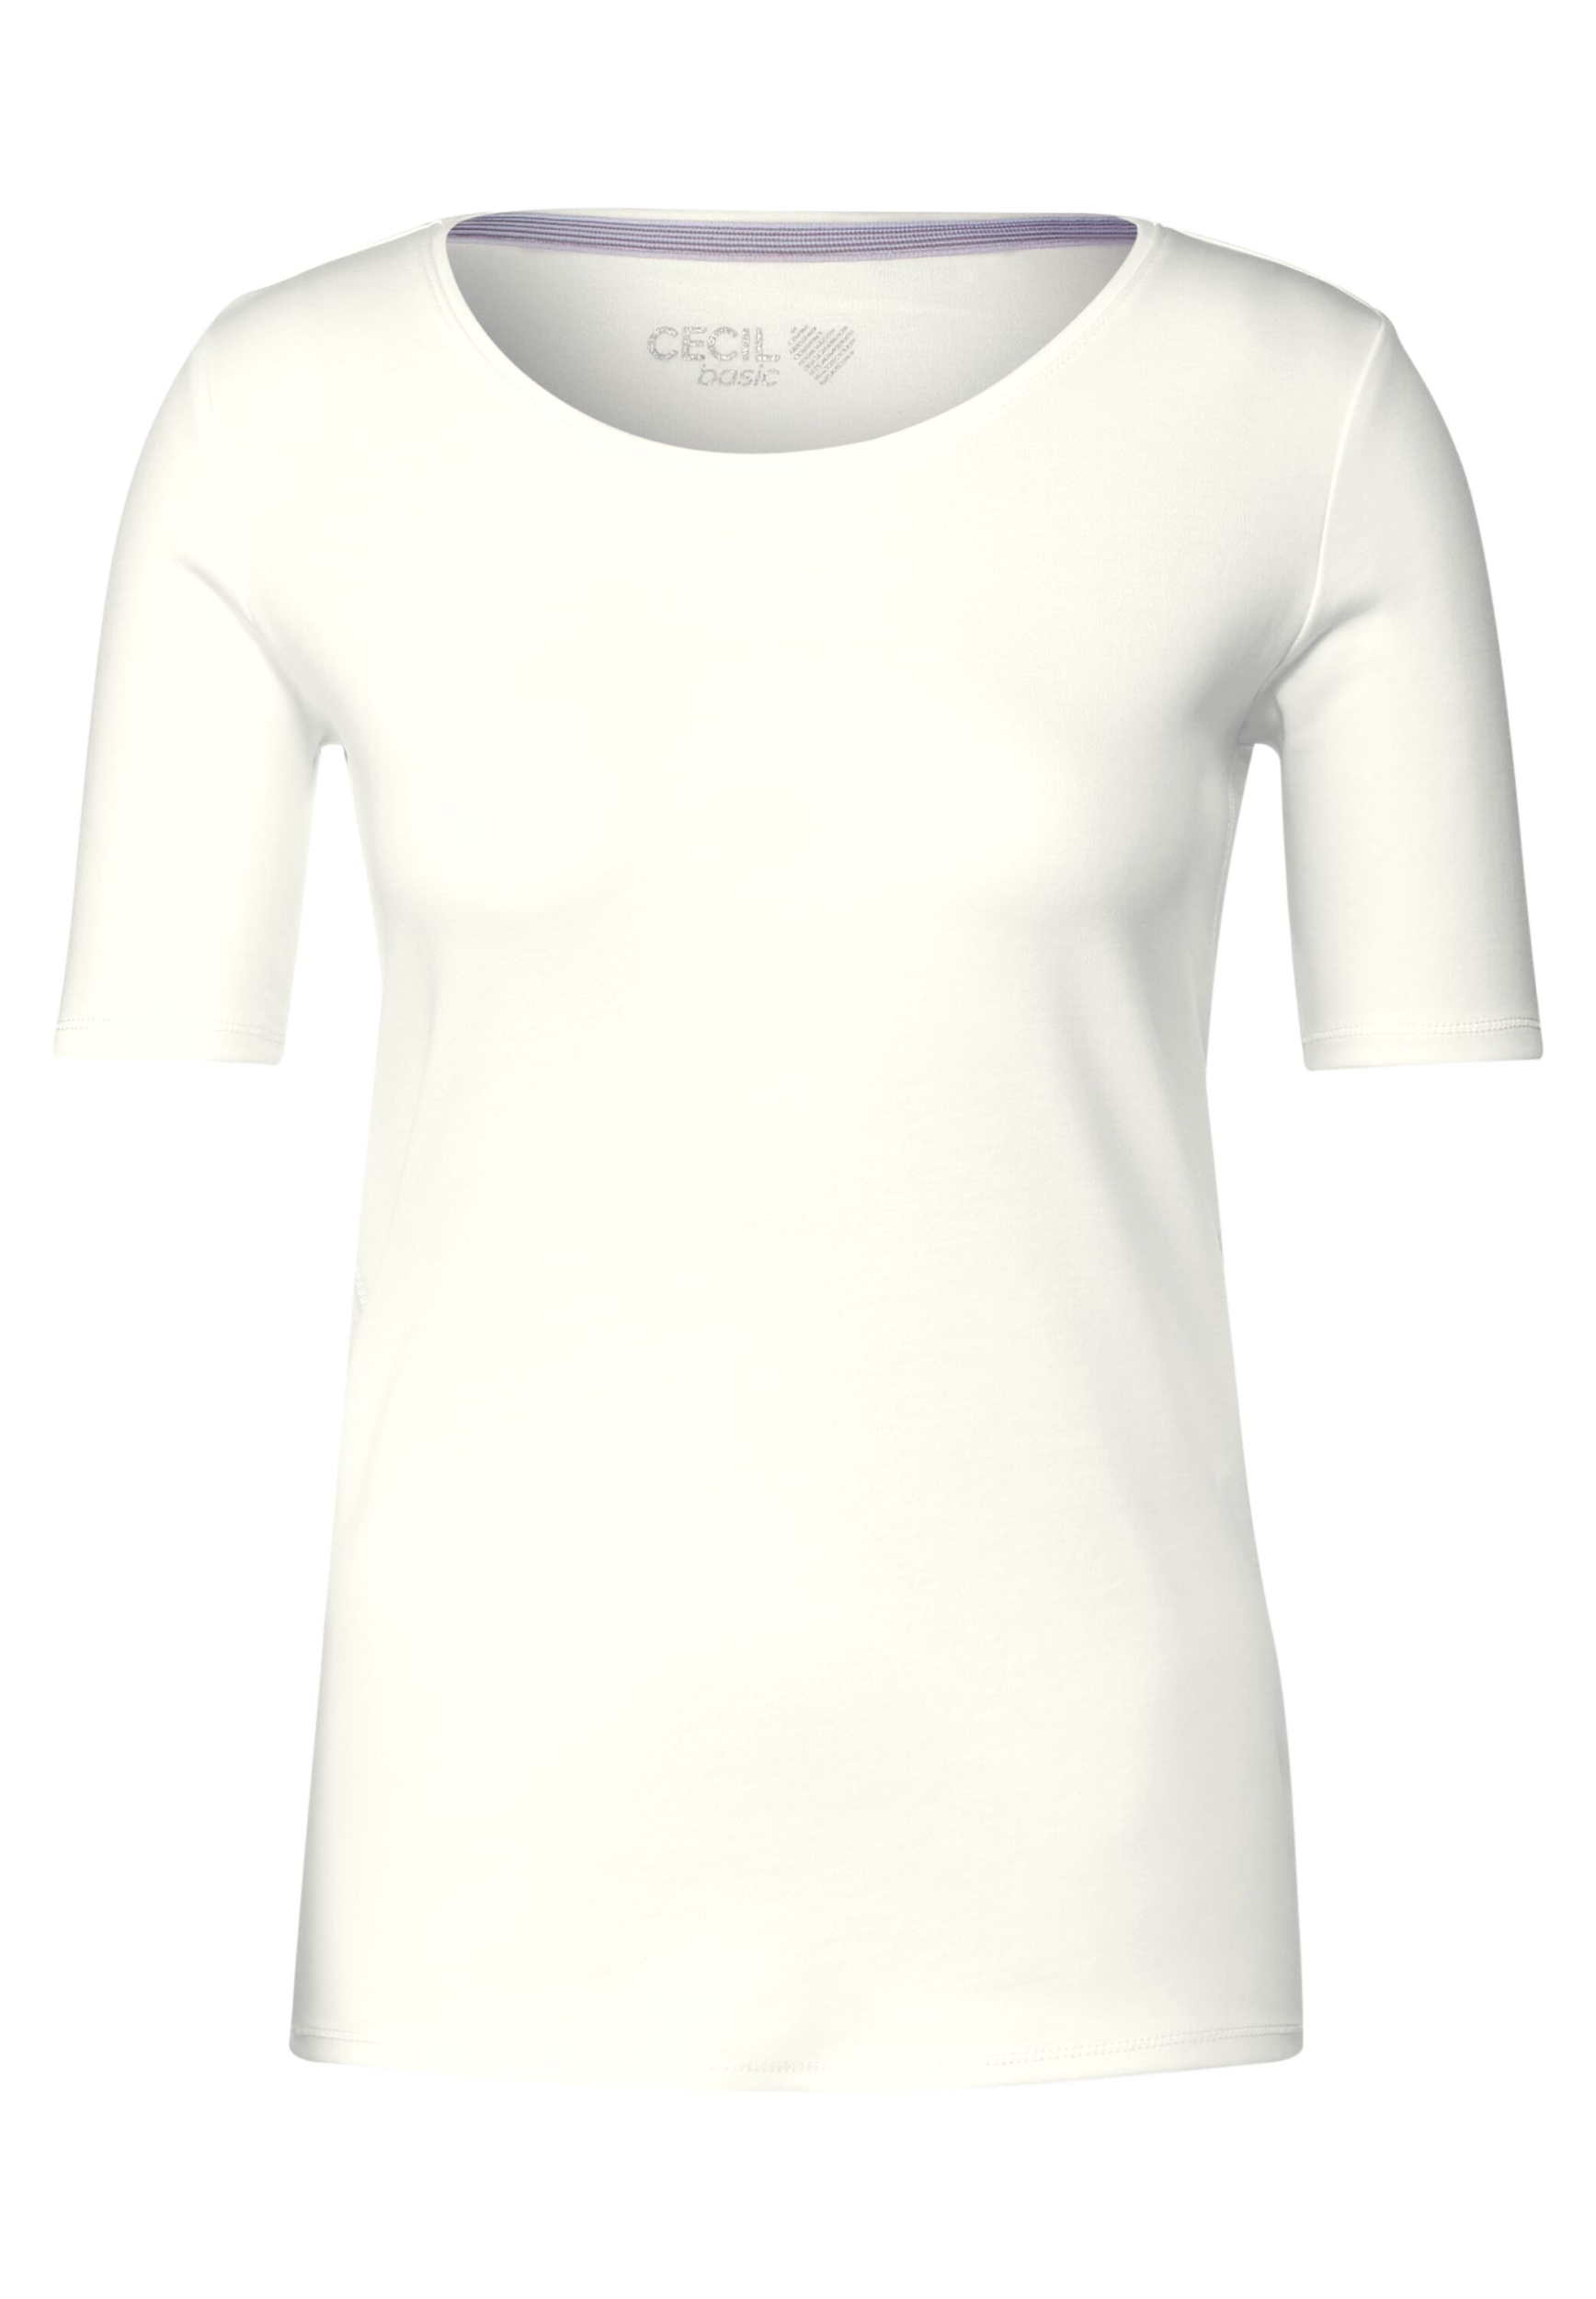 | XL vanilla white Lena Style | NOS B317515-13474-XL |